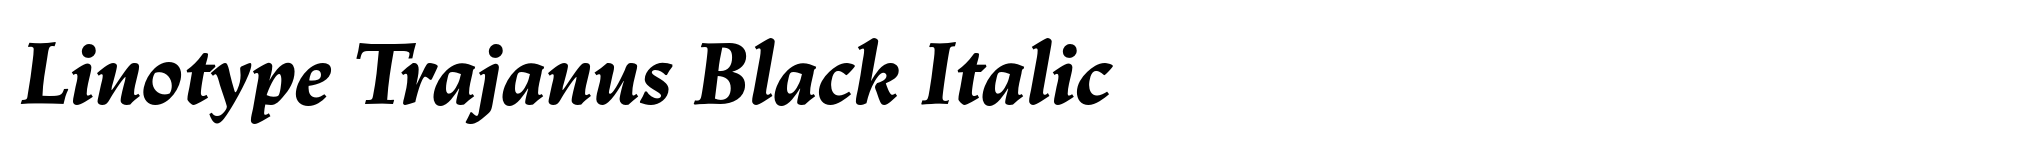 Linotype Trajanus Black Italic image